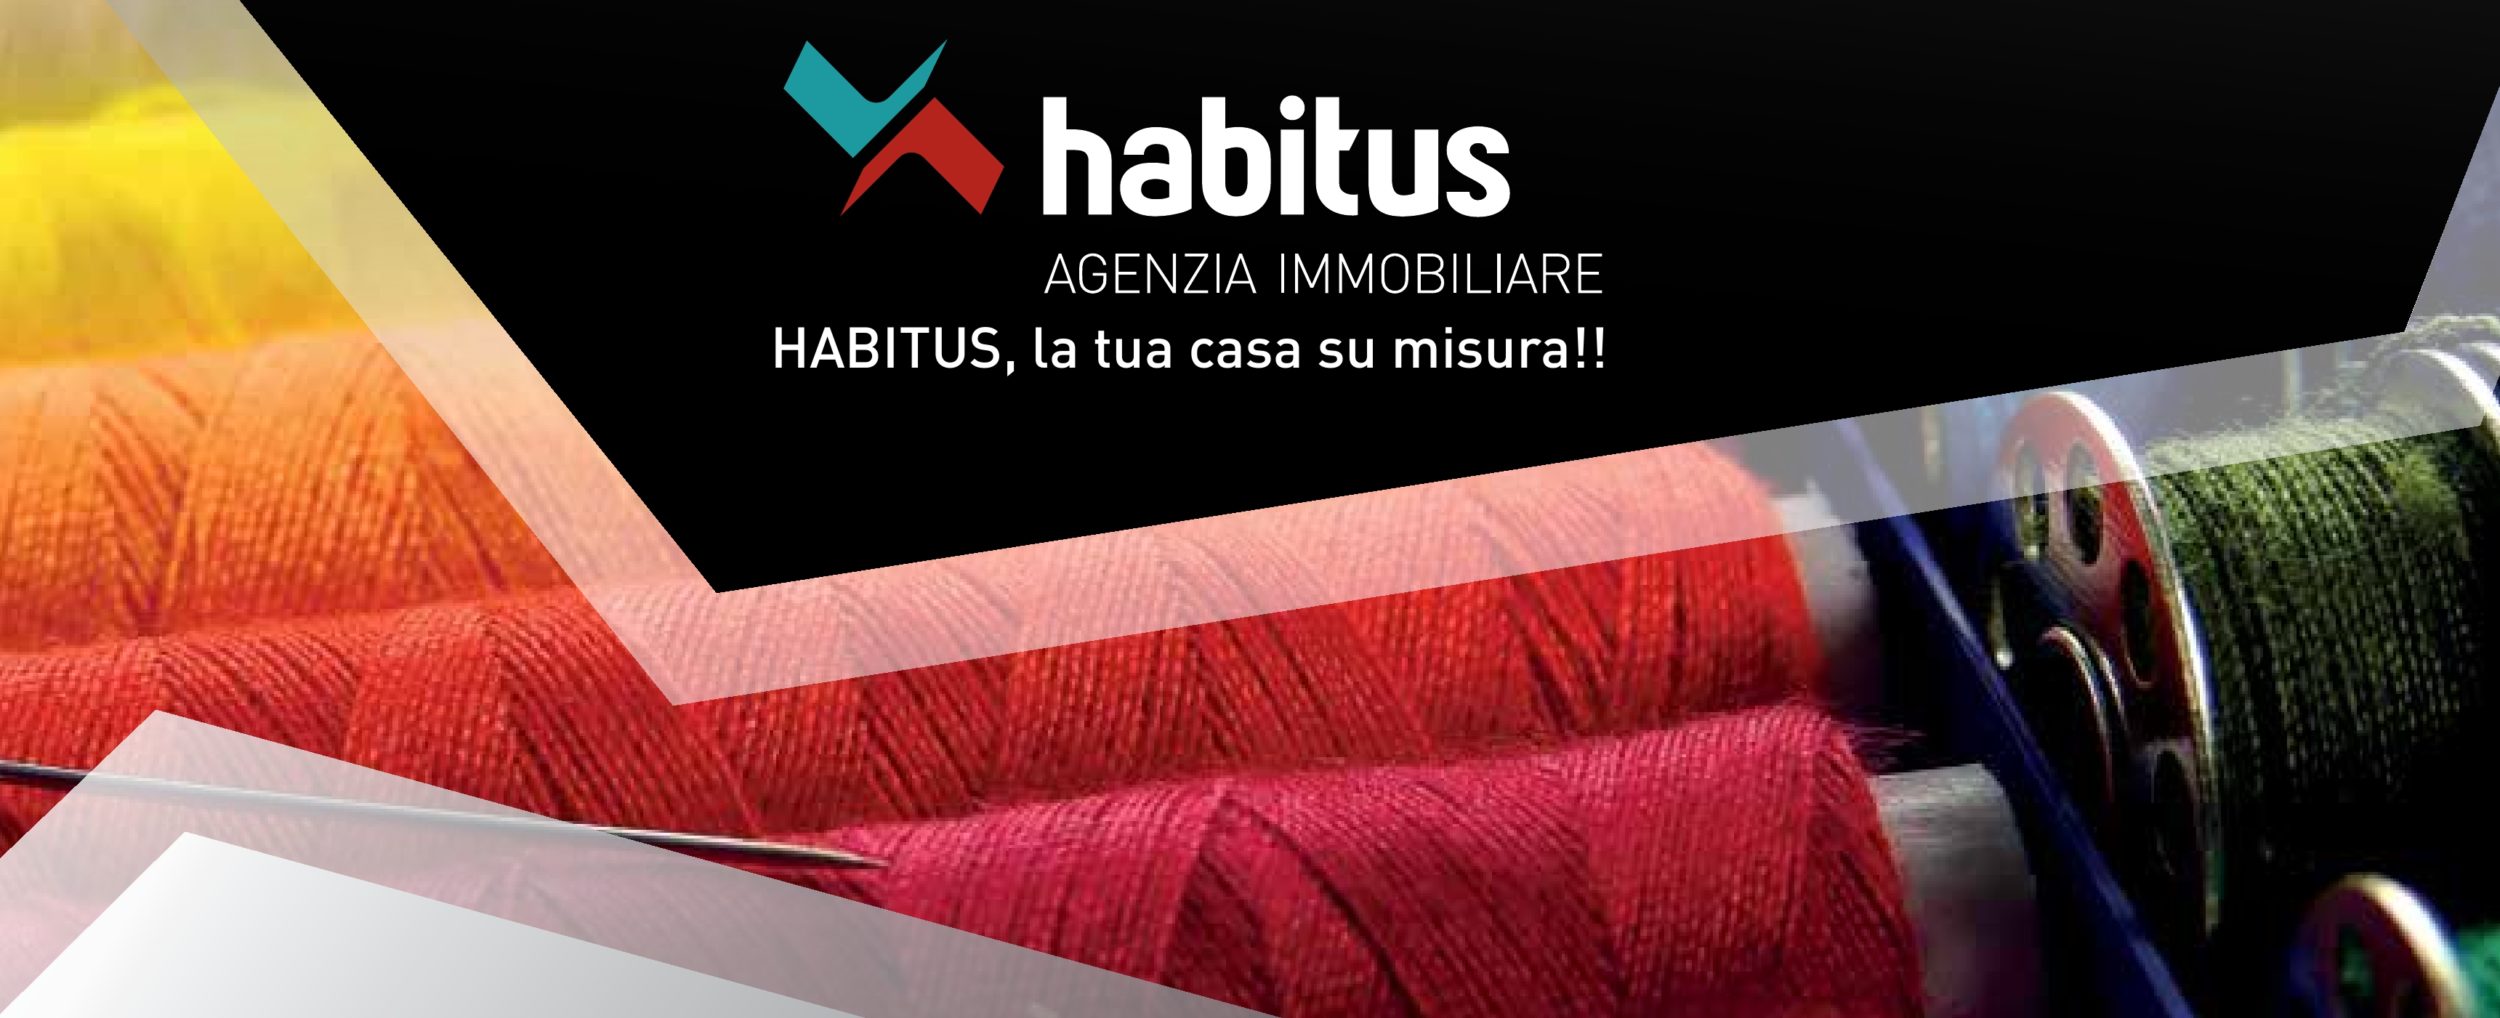 Habitus Agenzia Immobiliare